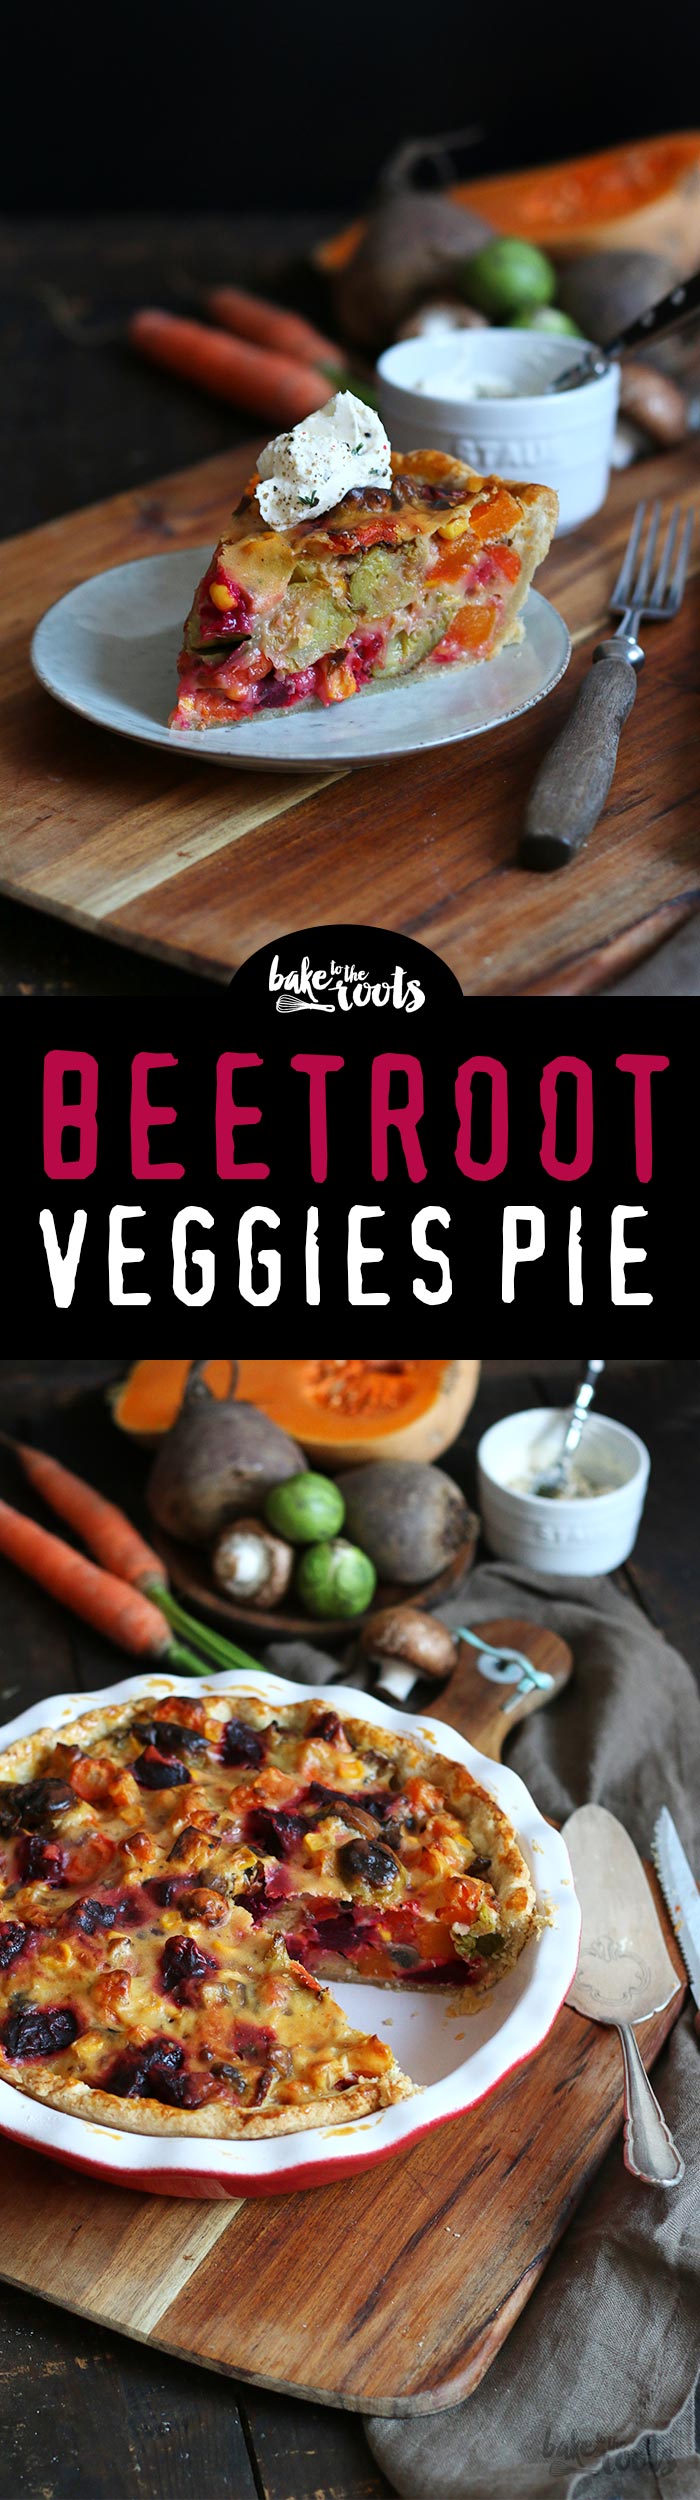 Leckerer Gemüse Pie mit Roter Bete und anderem Wintergemüse | Bake to the roots